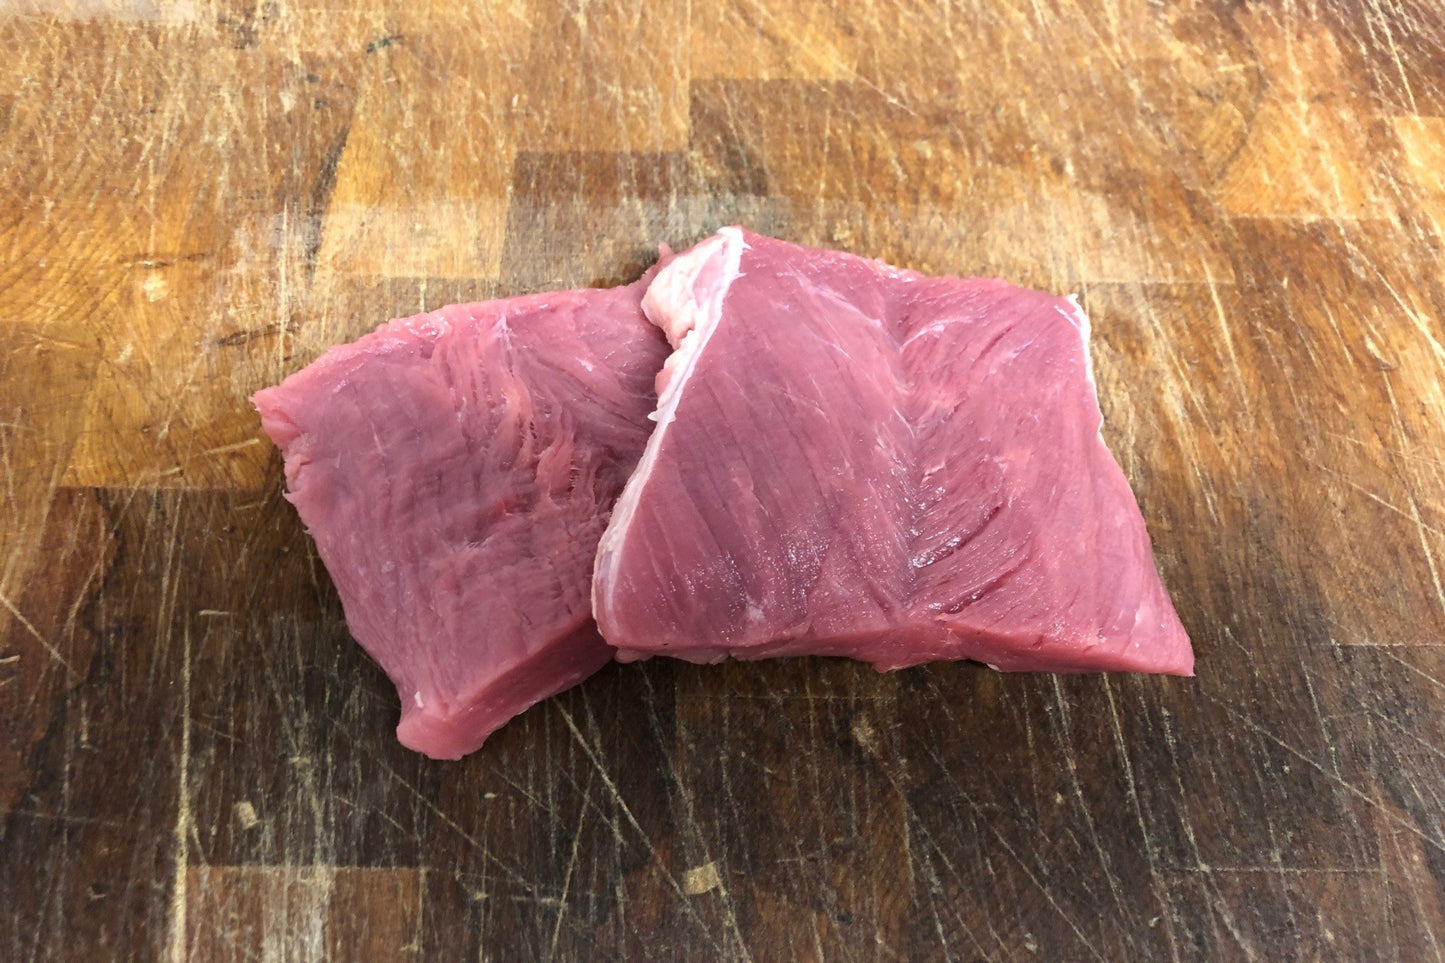 Pork Fillet Steak